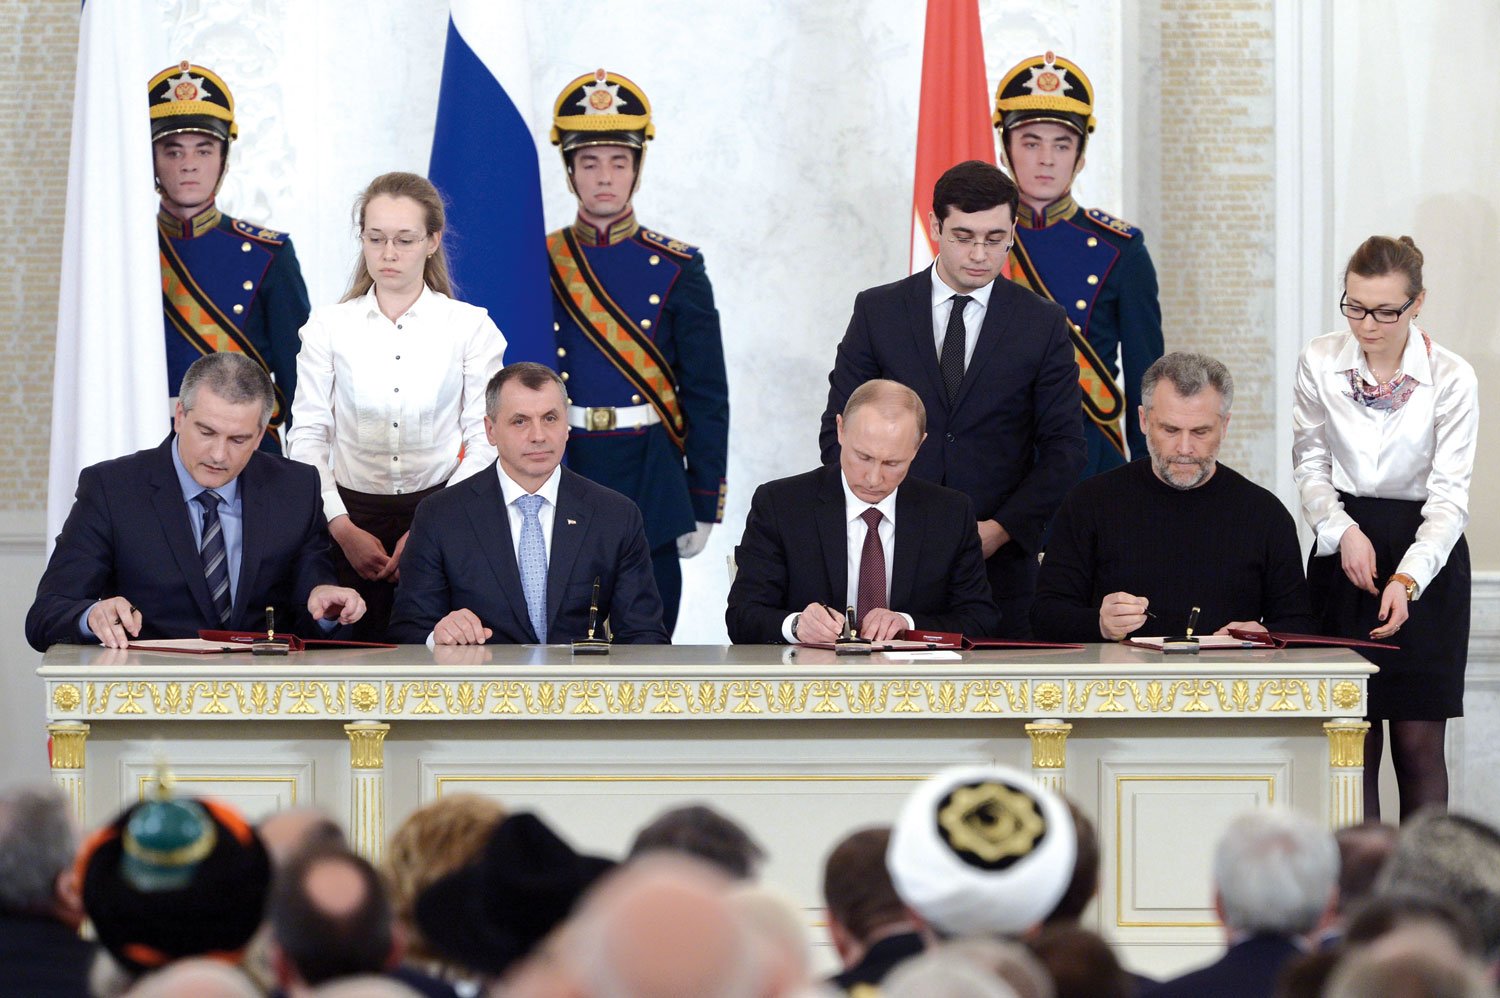 Vasemmalta oikealle: Sergei Aksjonov, Vladimir Konstantinov, Vladimir Putin, ja Aleksei Chaly allekirjoittavat sopimuksen Krimin liittämisestä Venäjään. 